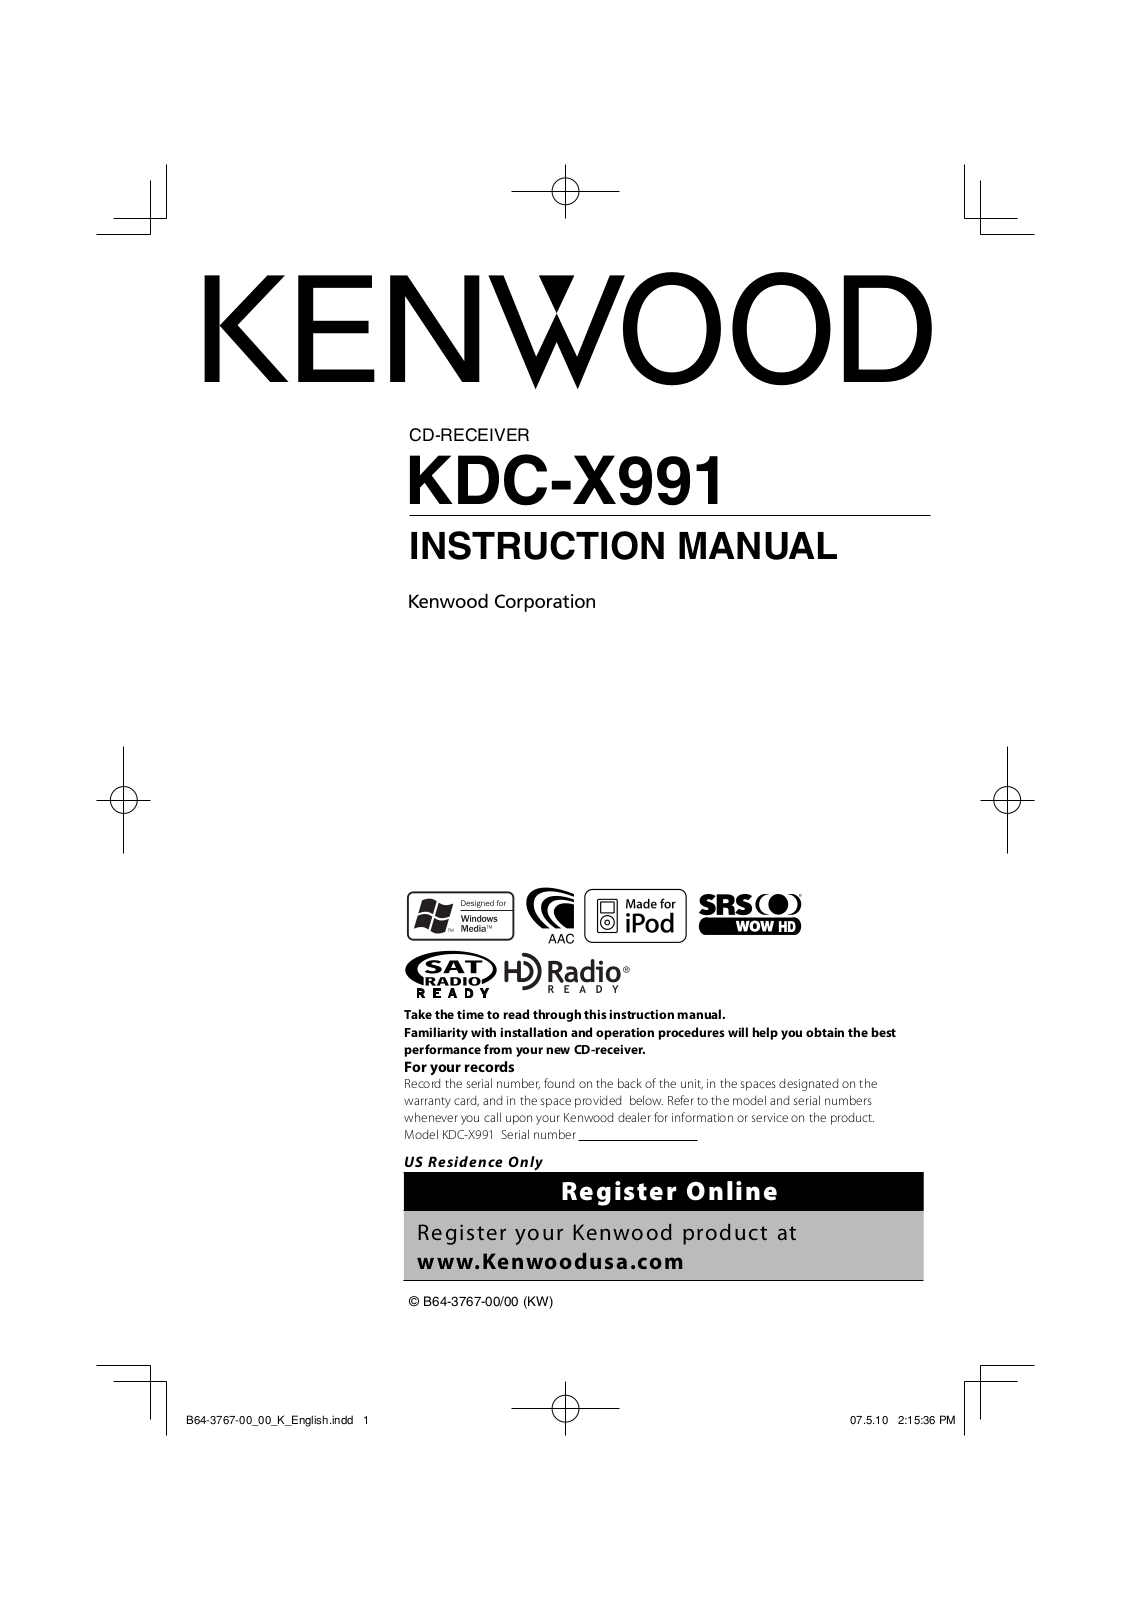 Kenwood KDC-X991 User Manual